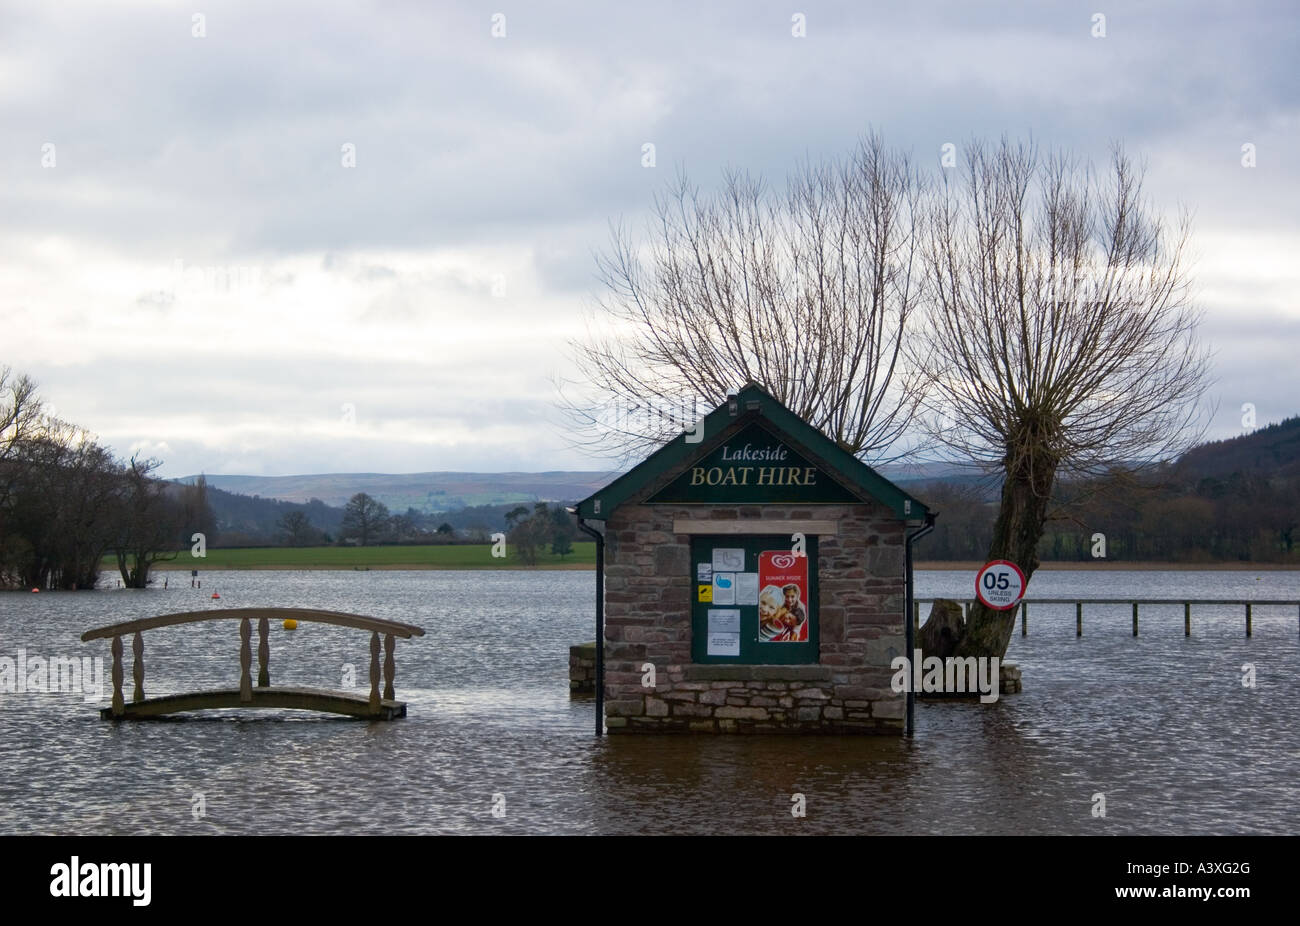 Location bateau inondé Hut, LLangorse Lake, au Pays de Galles, Royaume-Uni. Banque D'Images